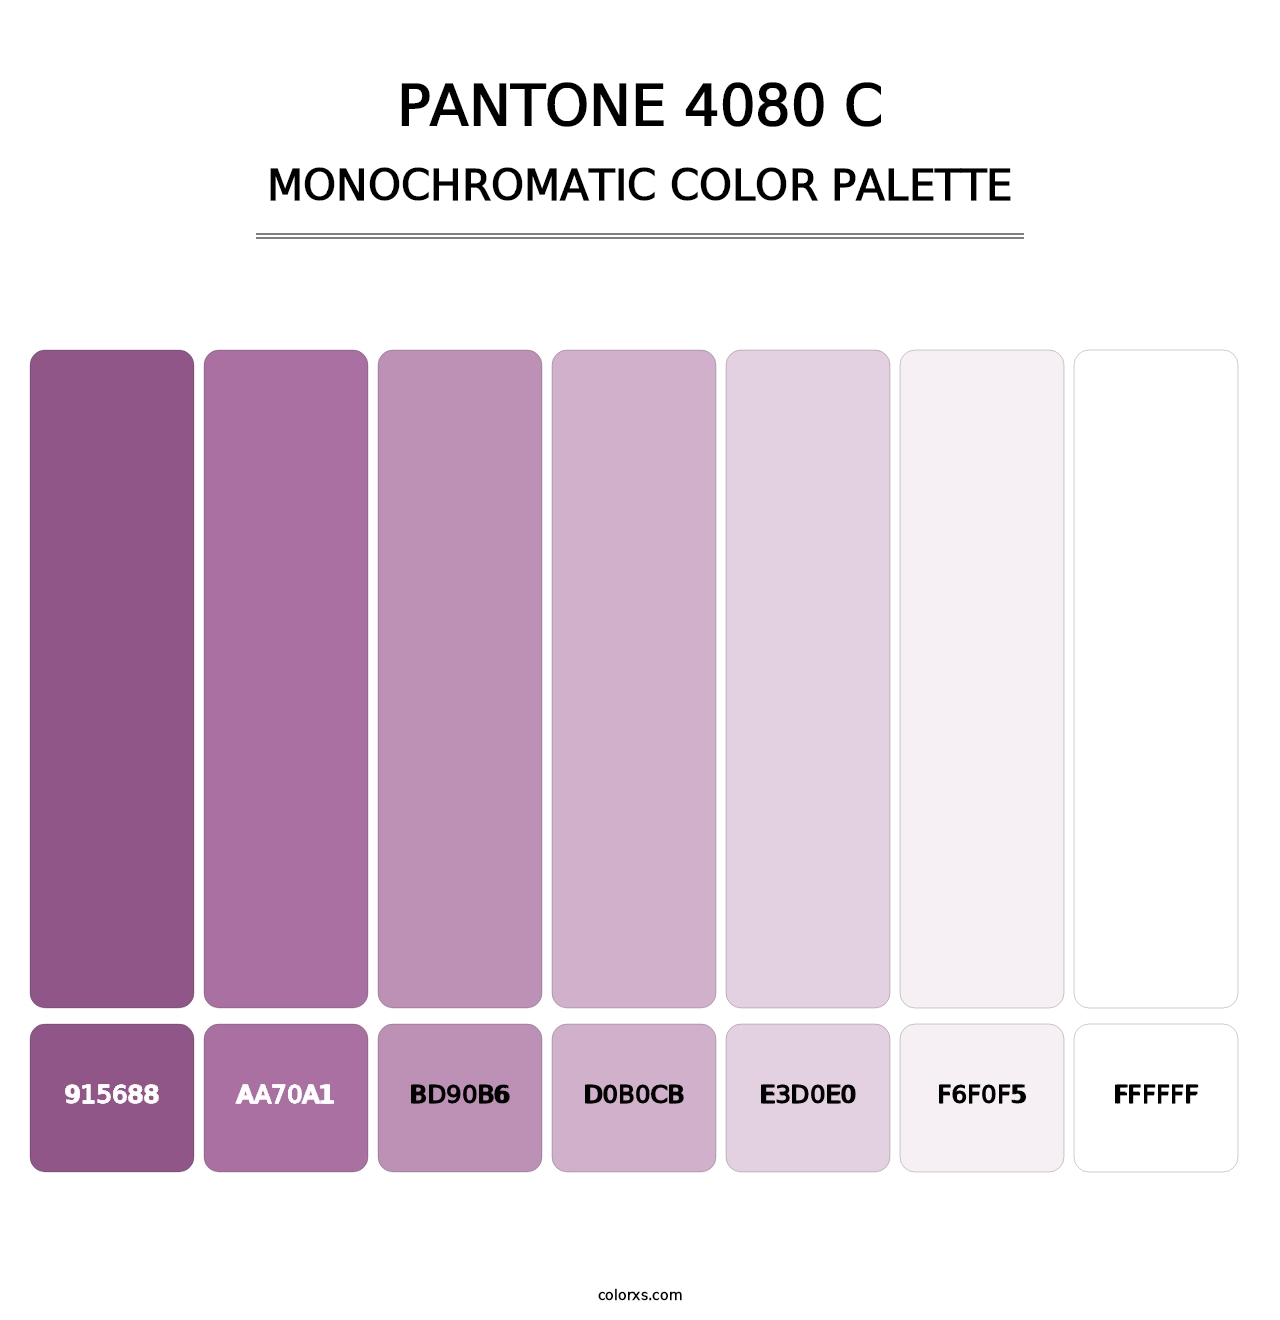 PANTONE 4080 C - Monochromatic Color Palette